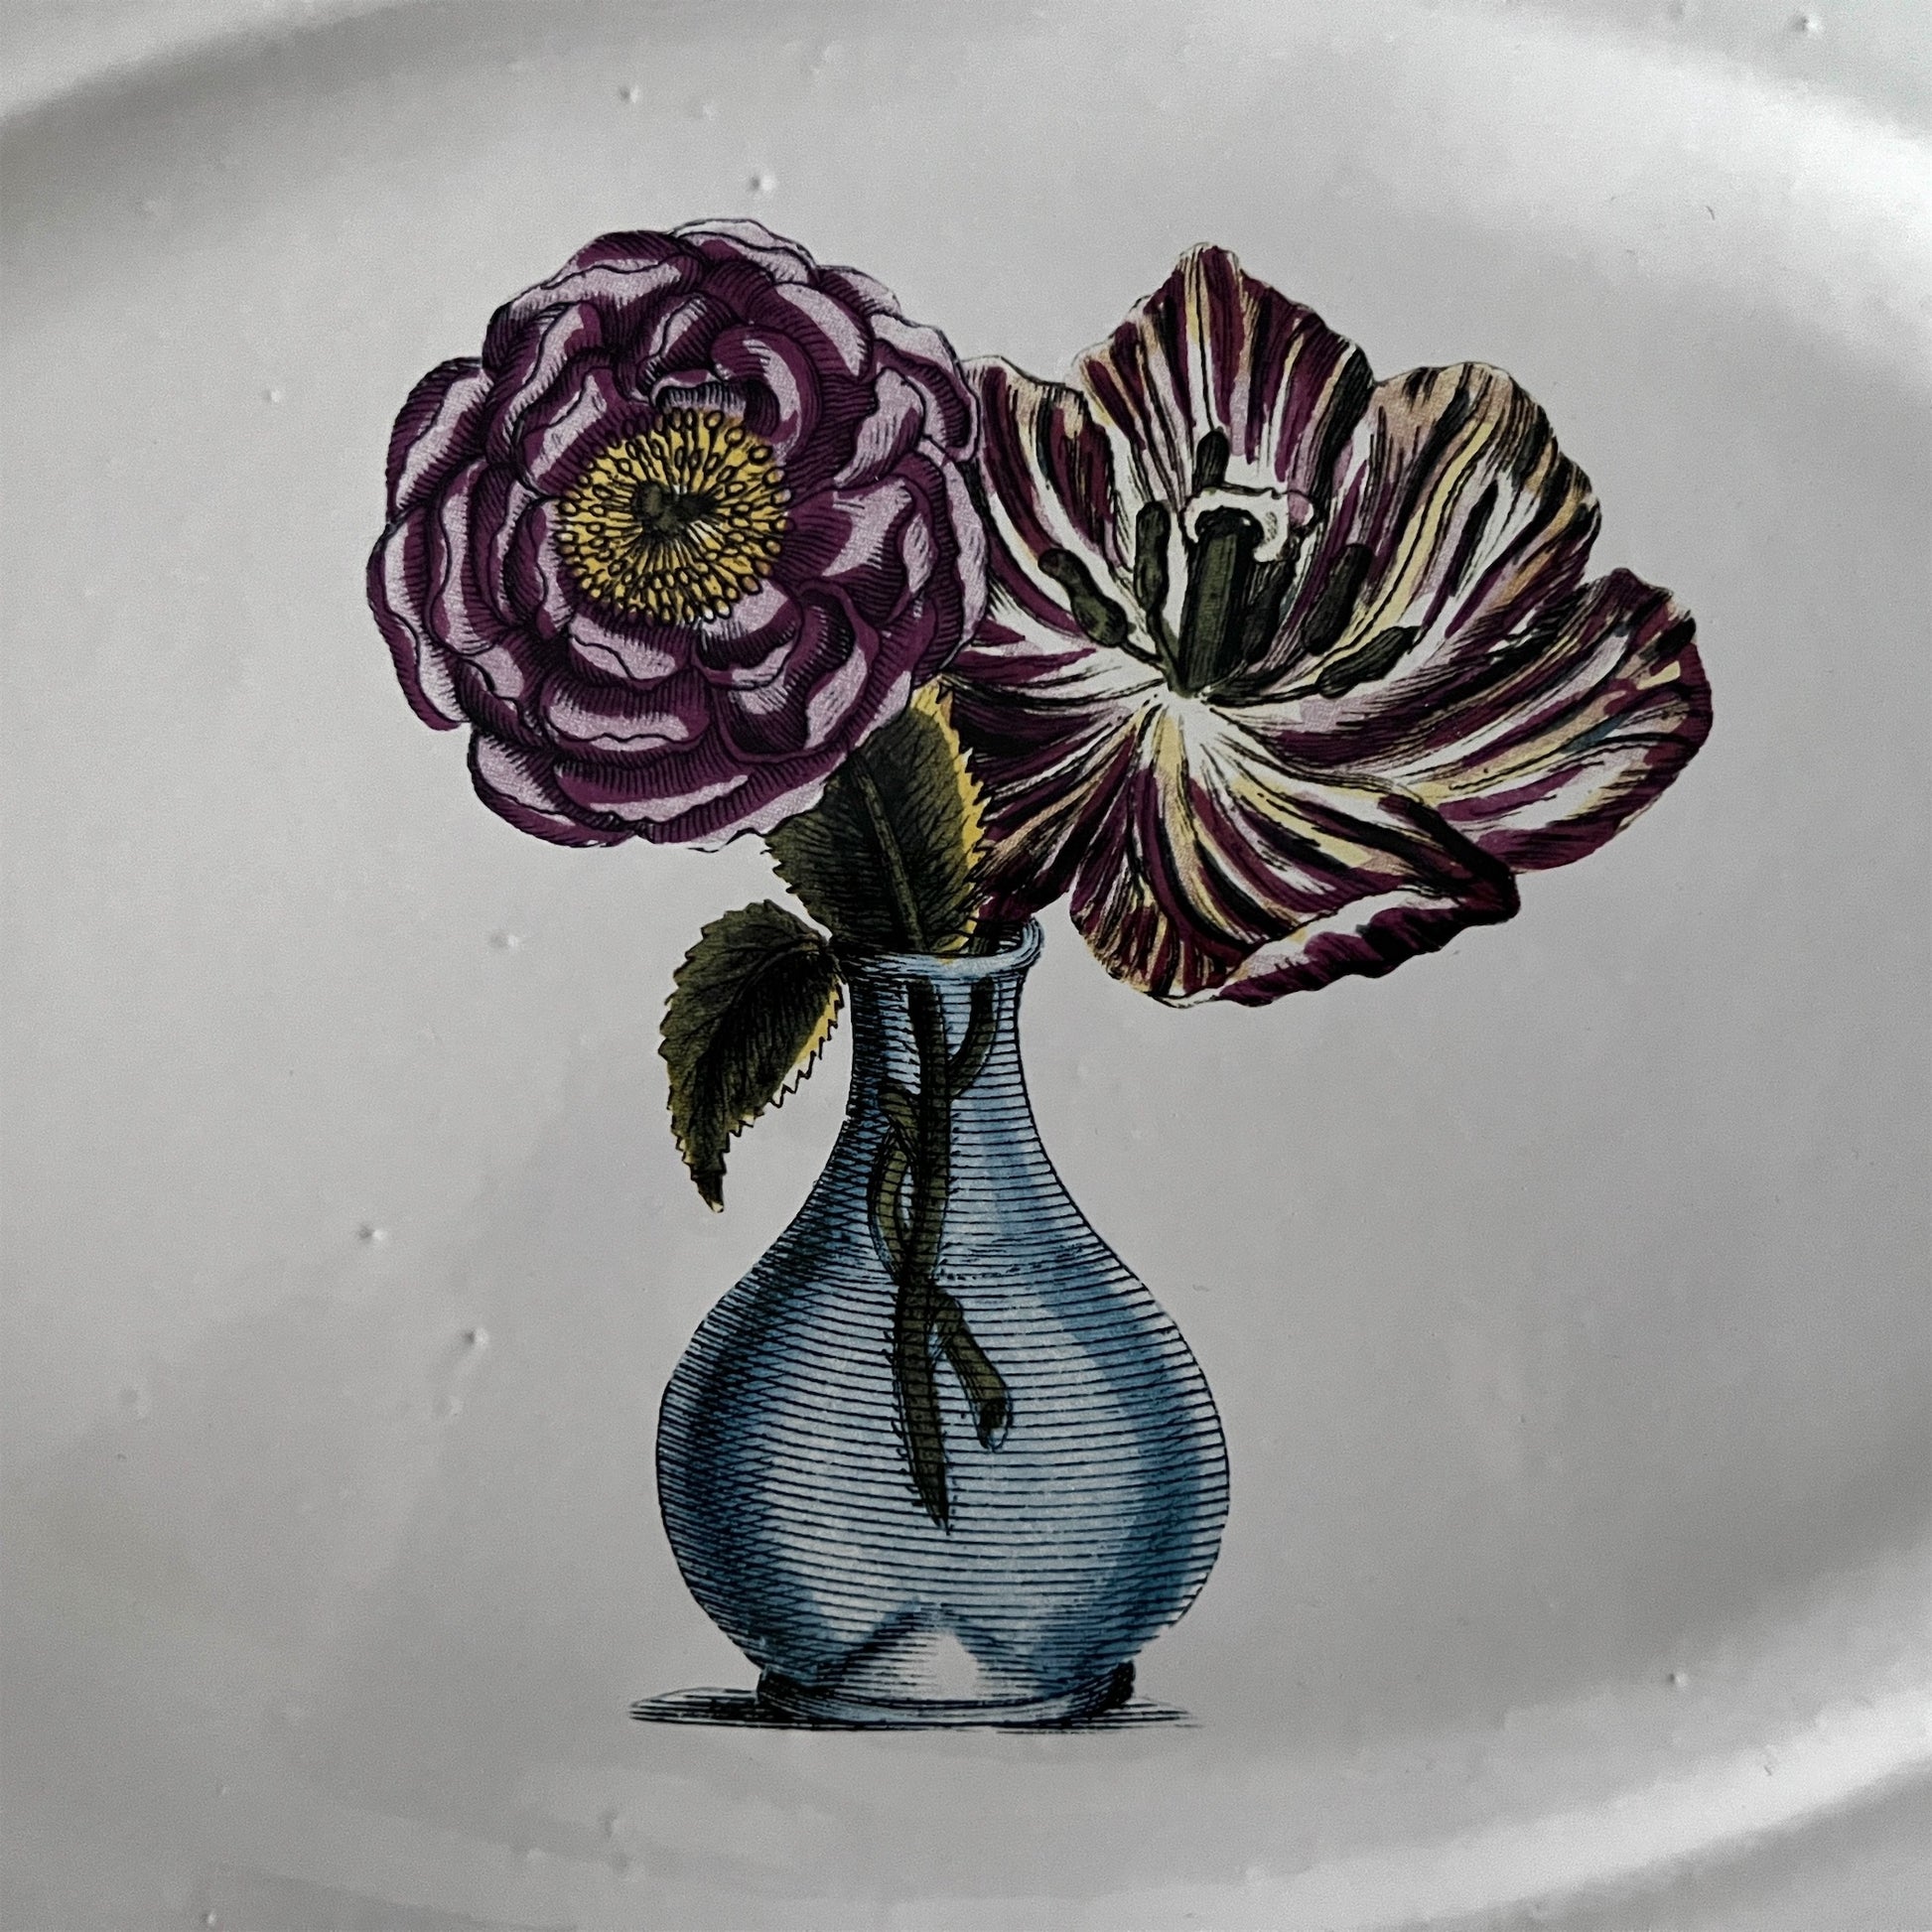 【Astier de Villatte】John Blue Vase with Flowers プレート